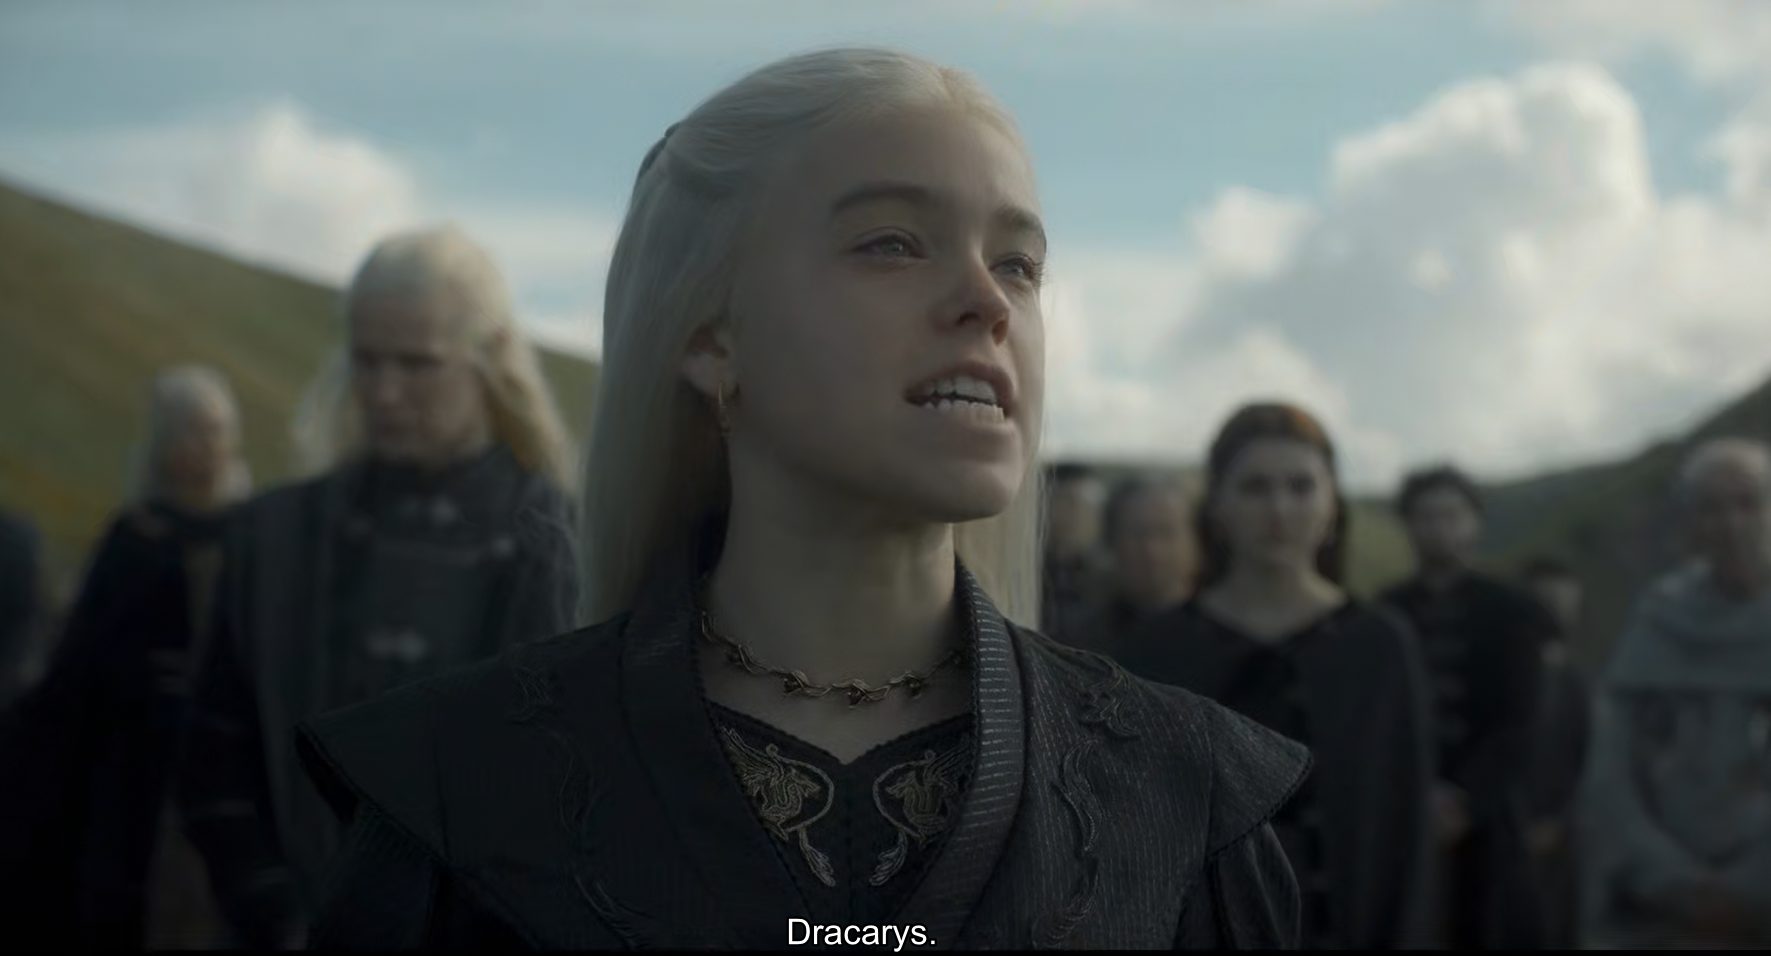 'Dracarys' de Rhaenyra Targaryen,